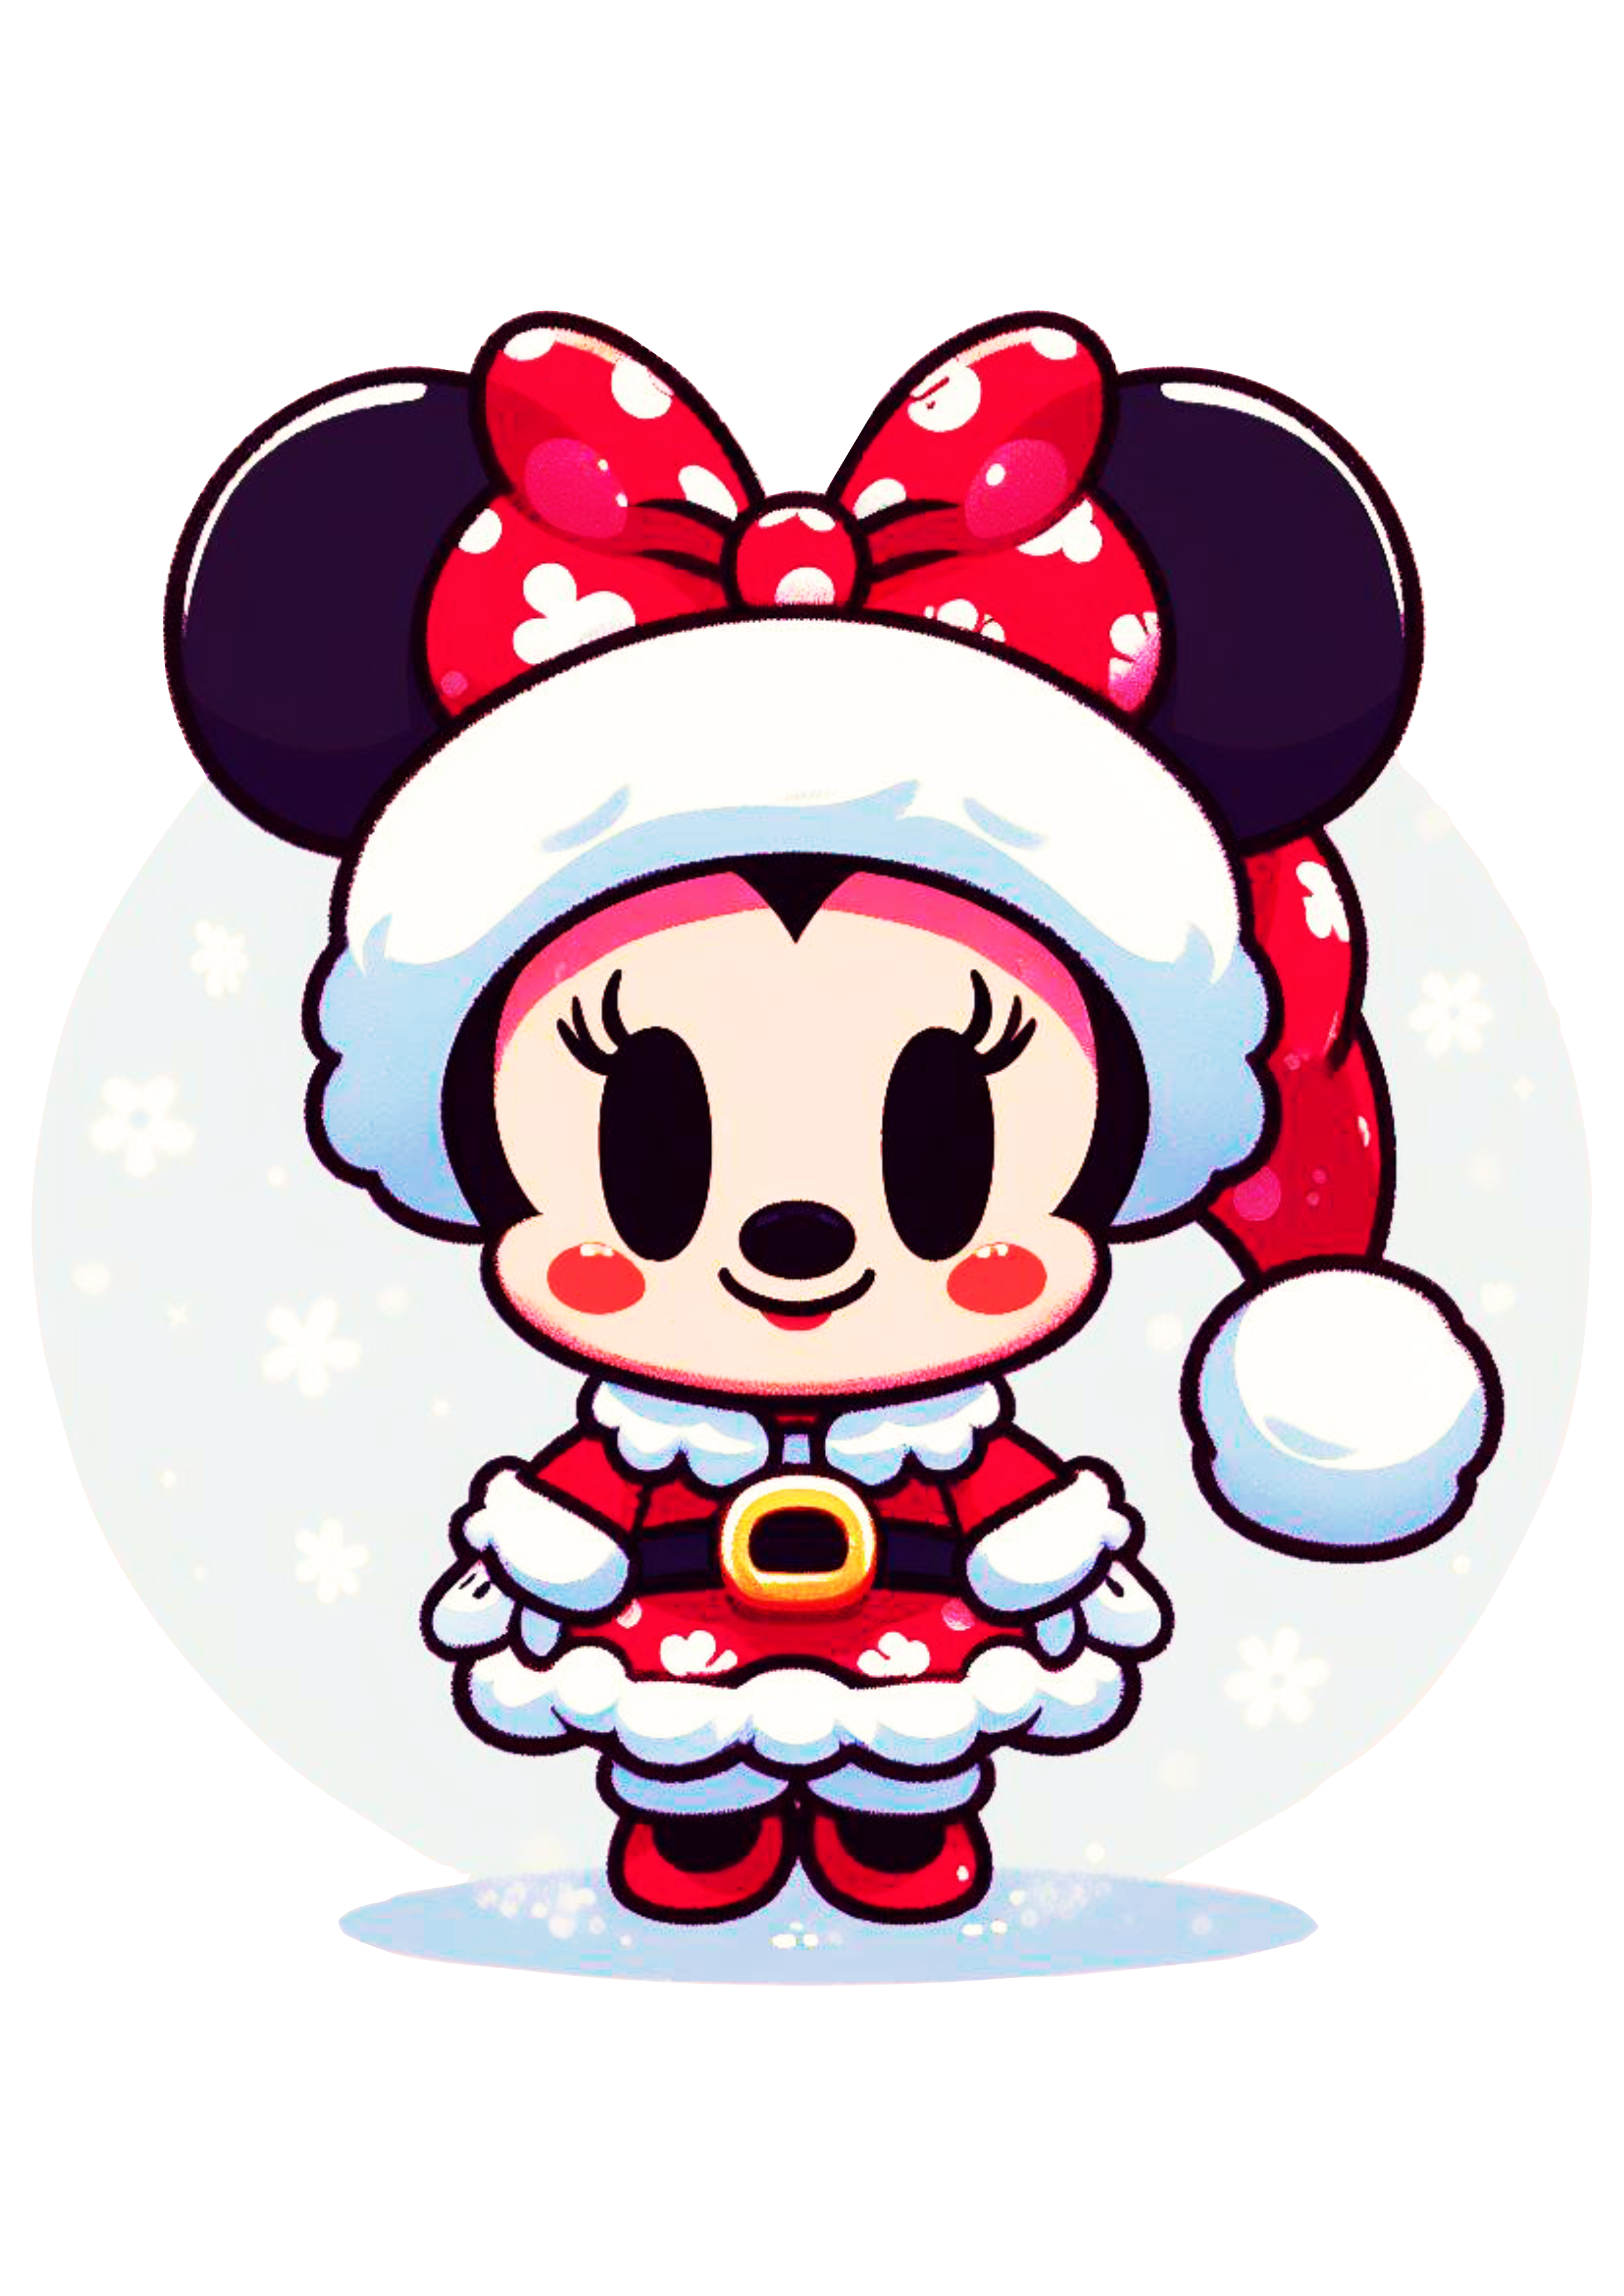 Minnie Mouse baby com roupinha de natal bonequinha fofinha baby png